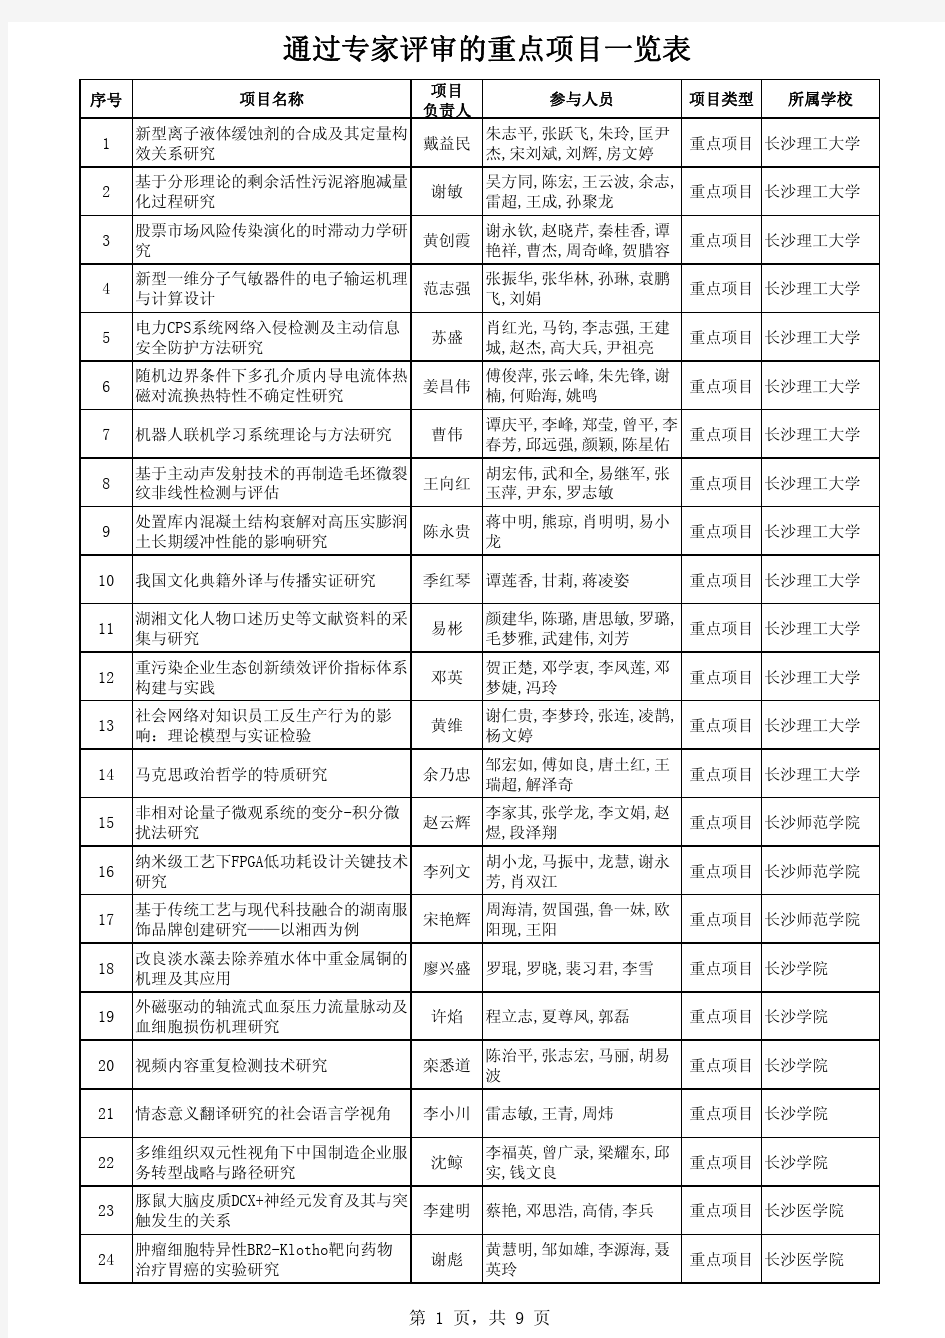 2015年通过专家评审的湖南省教育厅科学研究项目(重点项目)